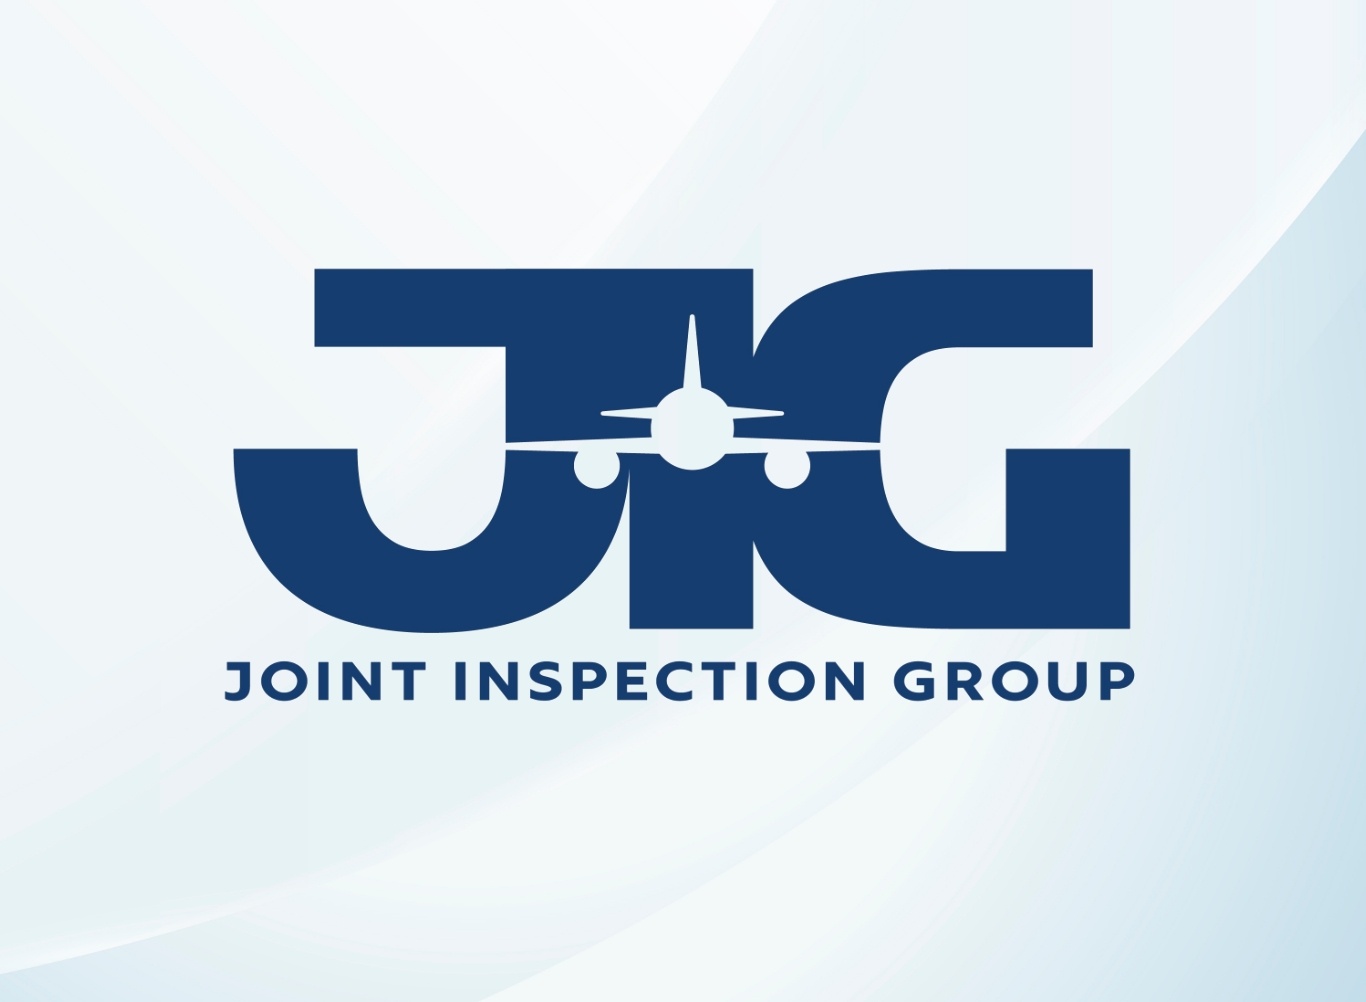 บาฟส์ได้รับประกาศนียบัตรรับรองมาตรฐานการให้บริการระดับ “ดีเลิศ” จาก Joint Inspection Group (JIG) ประจำปี 2552